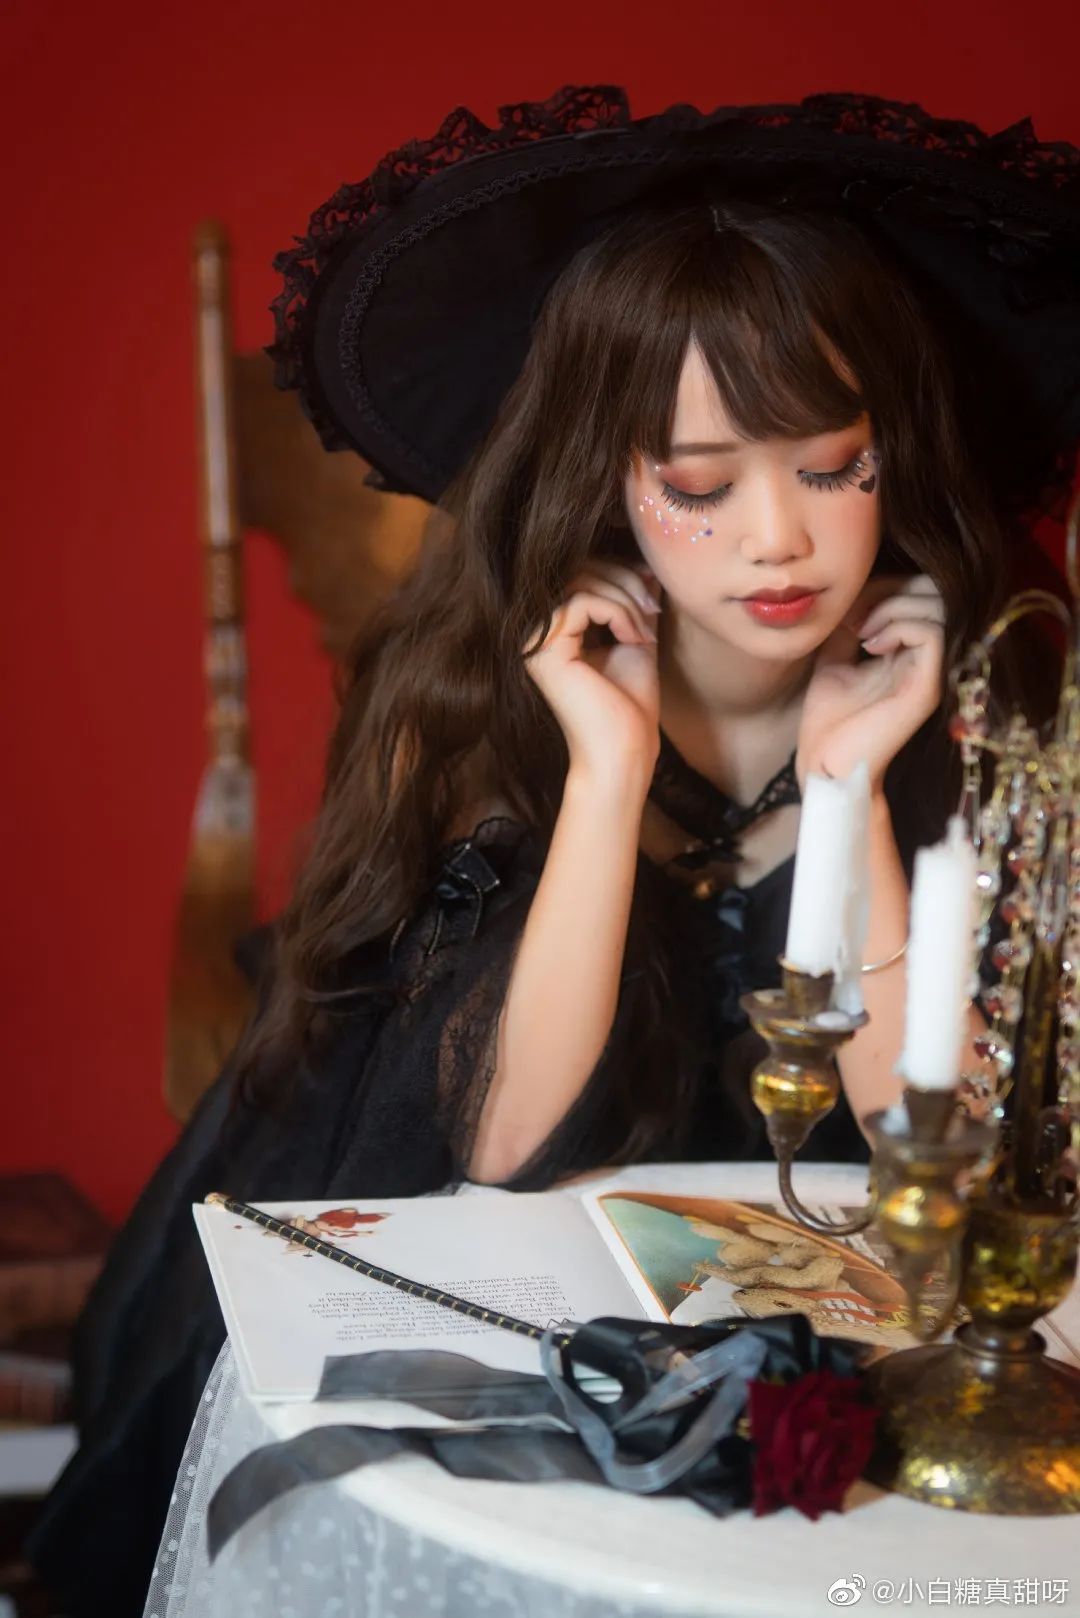 妹子摄影 – Lolita可爱猫天使，魔女笑容有点甜_图片 No.3